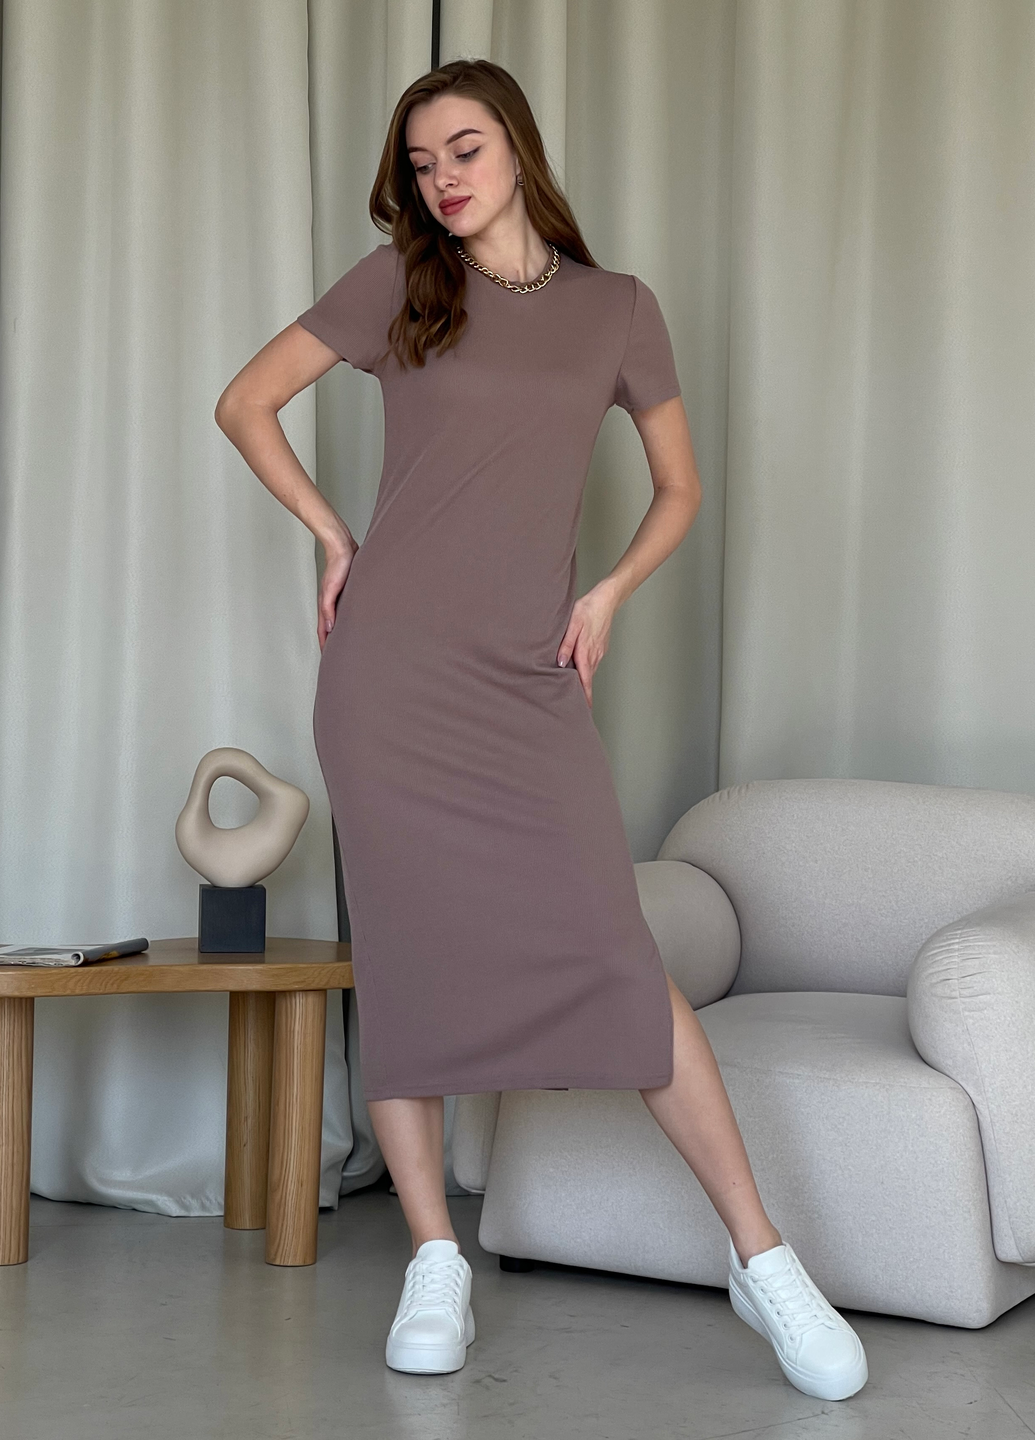 Купить Длинное платье-футболка в рубчик цвета мокко Merlini Кассо 700000124 размер 42-44 (S-M) в интернет-магазине